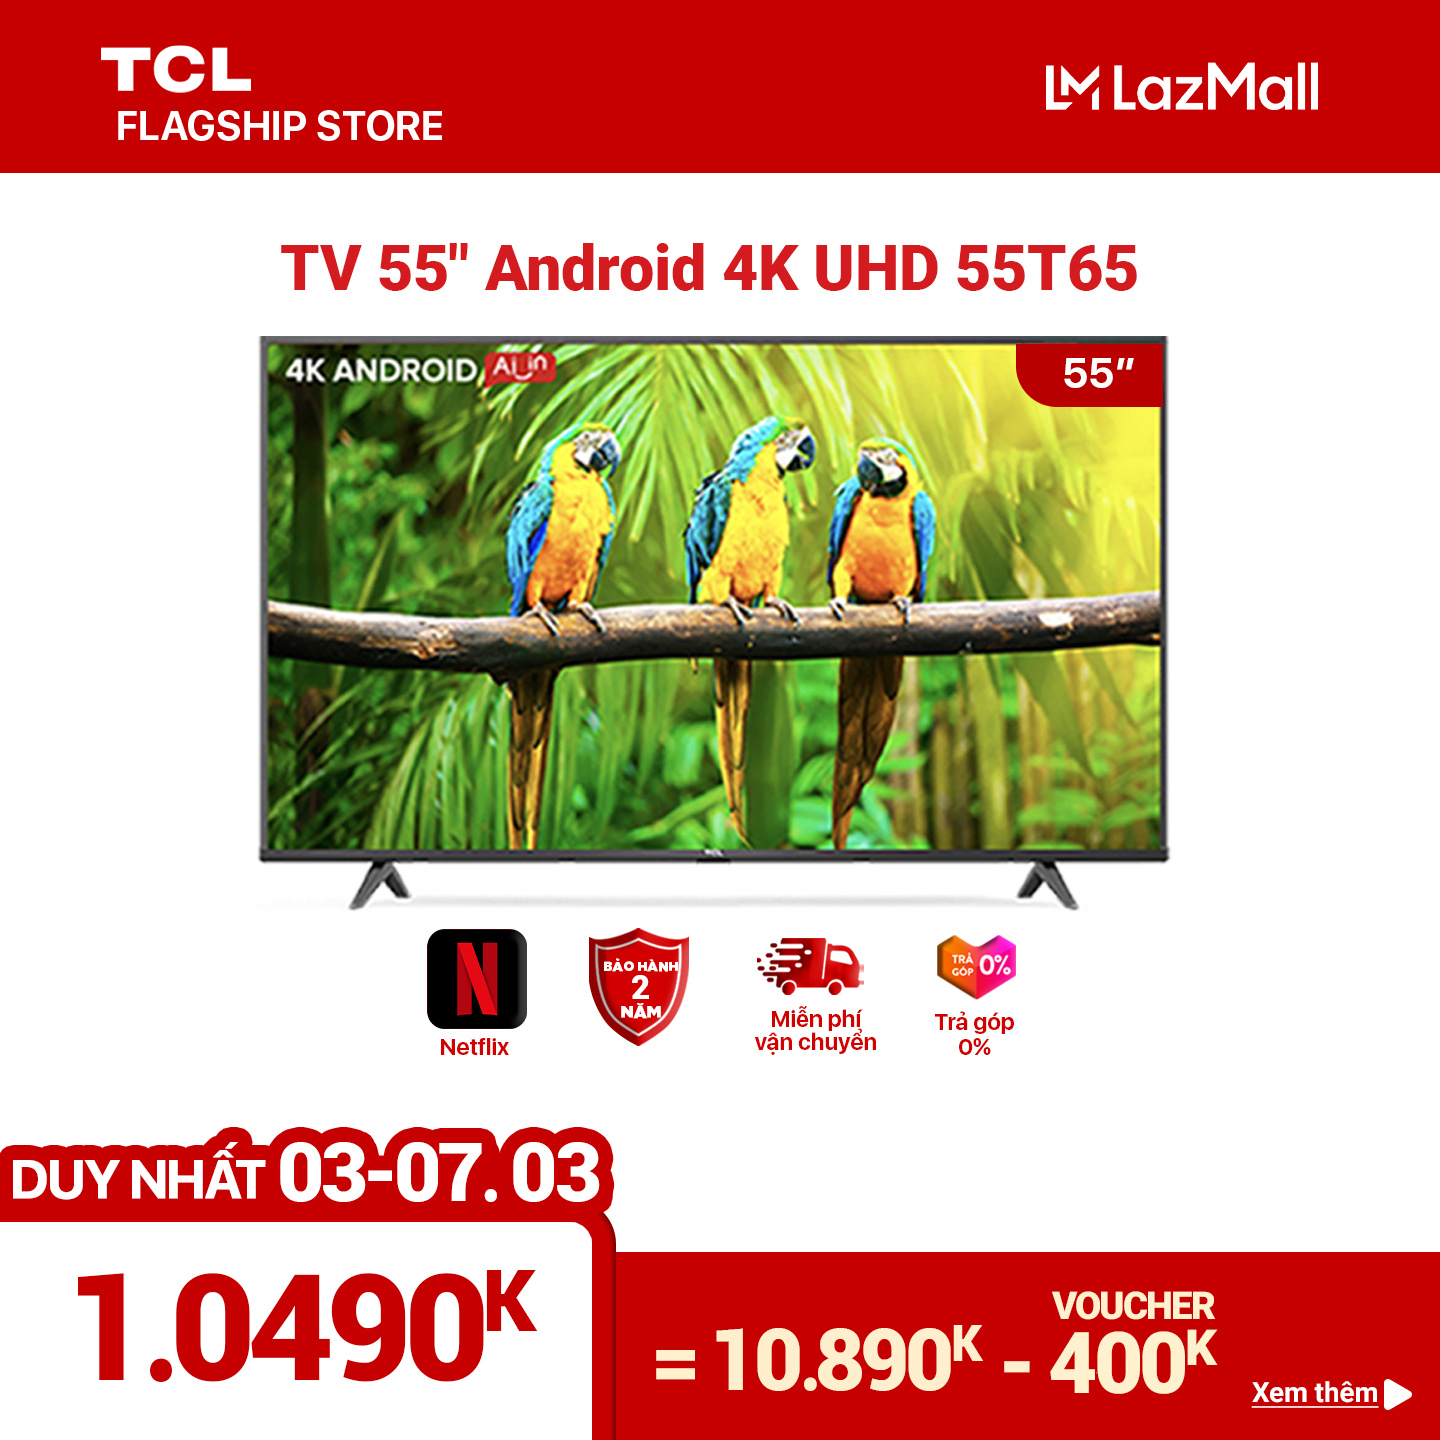 55” 4K UHD Android Tivi TCL 55T65 – Gam Màu Rộng , HDR , Dolby Audio – Bảo Hành 2 Năm , trả góp 0%